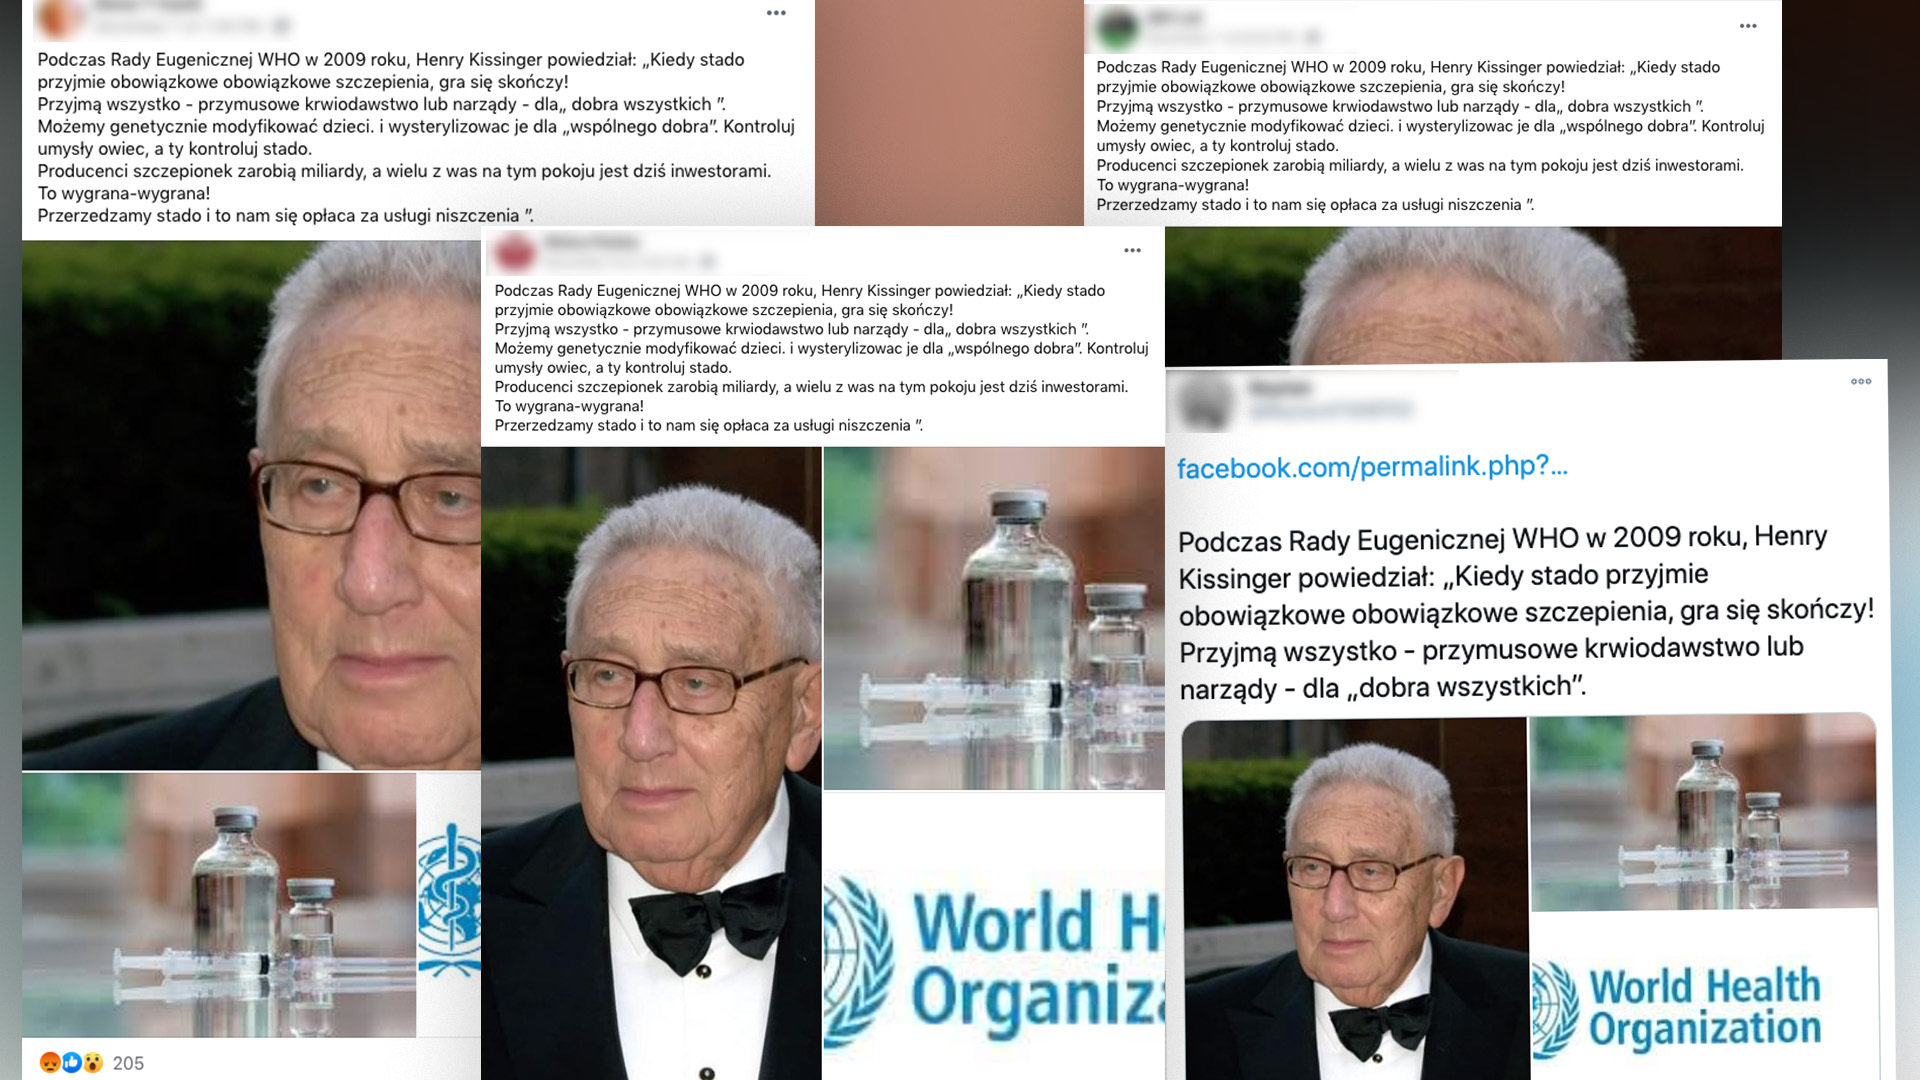 Popularne wpisy w mediach społecznościowych przypisujące nieprawdziwy cytat Henry'emu Kissingerowi.